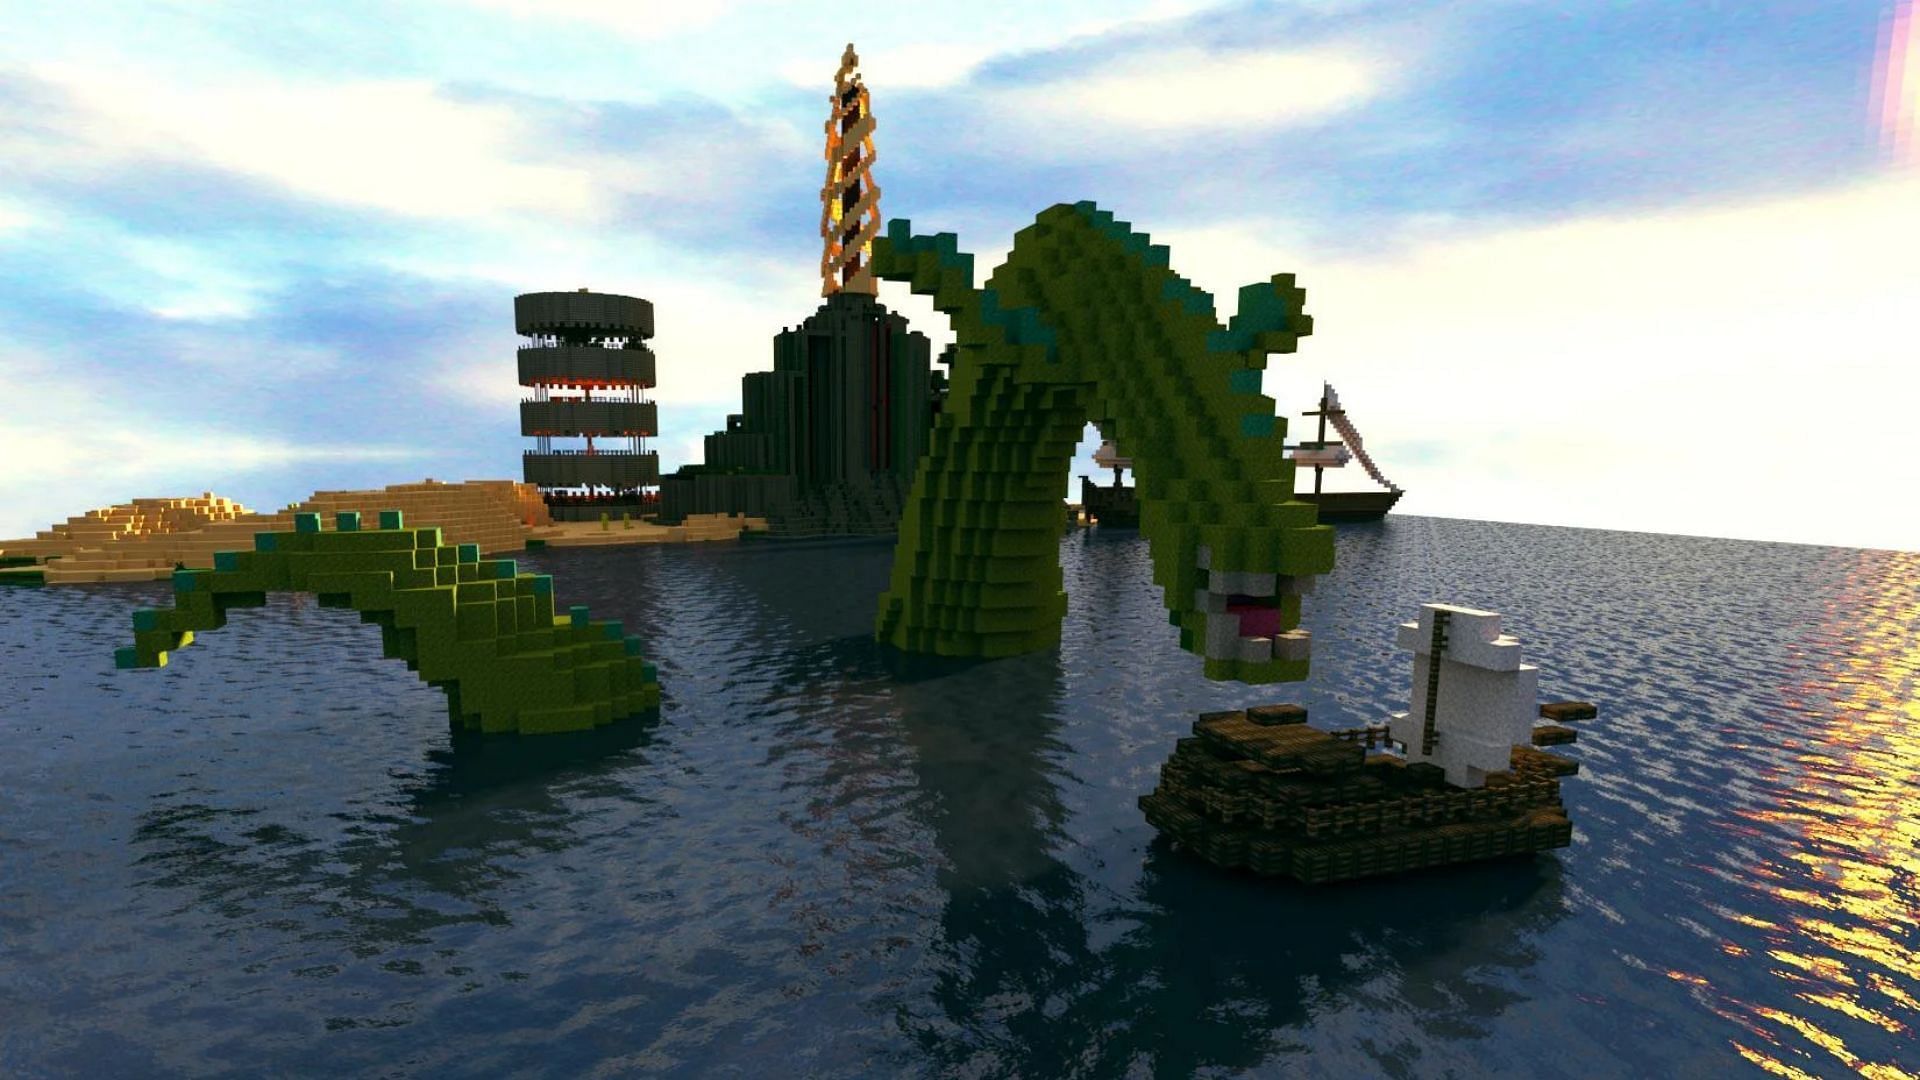 An underwater sea monster can be built in Minecraft (Image via Reddit/u/Grandmeister)